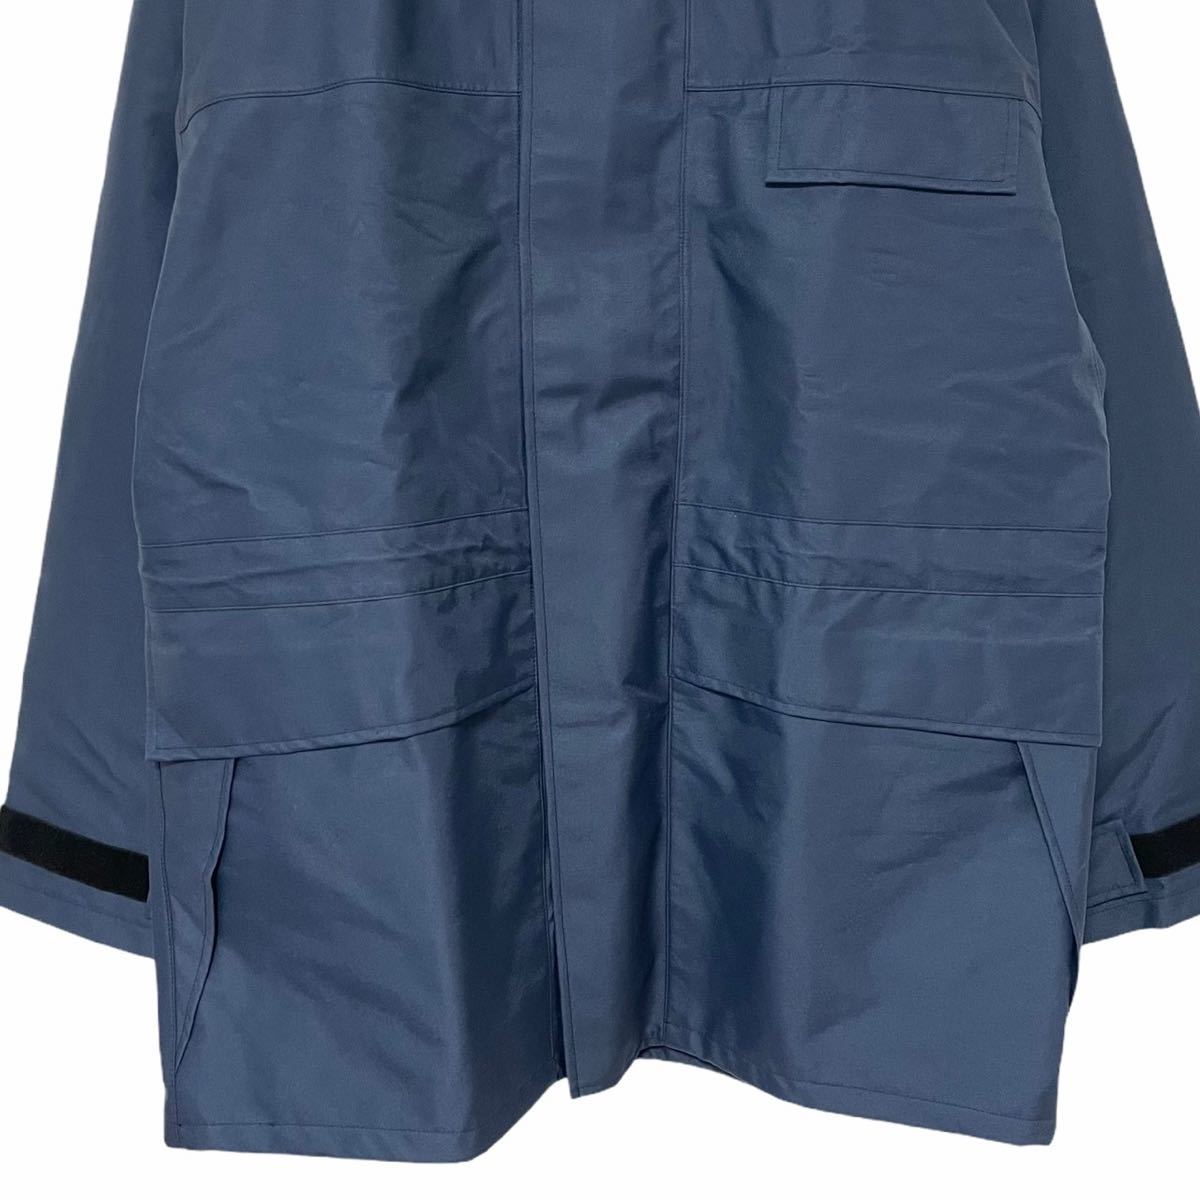 一番安い通販 デッドストックイギリス空軍RAFwet jacket weather ミリタリージャケット